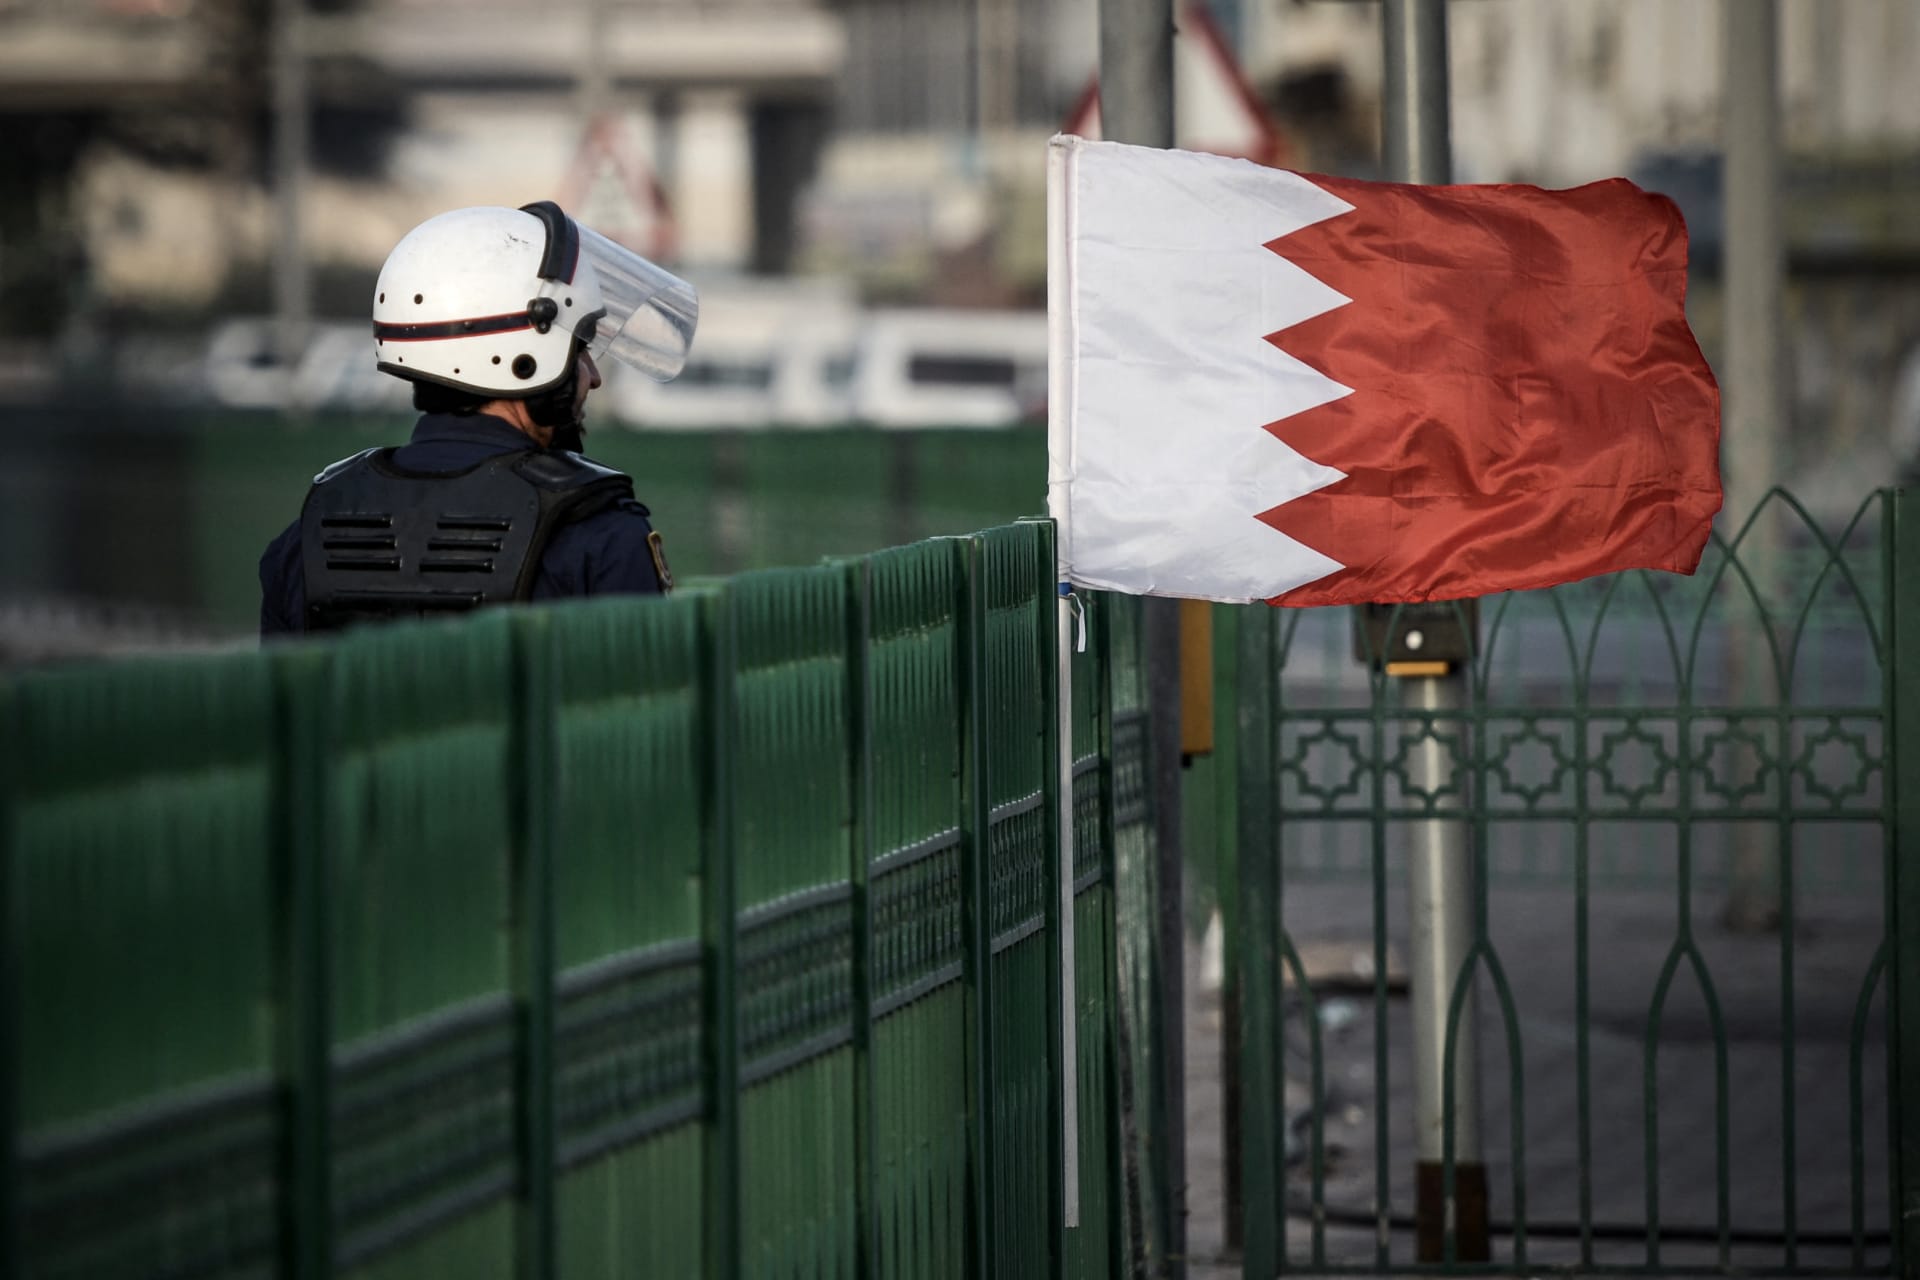 البحرين تسترد فتاة بعمر 24 عاما هربت "لدولة شقيقة" ومطلوبة بقضية احتيال